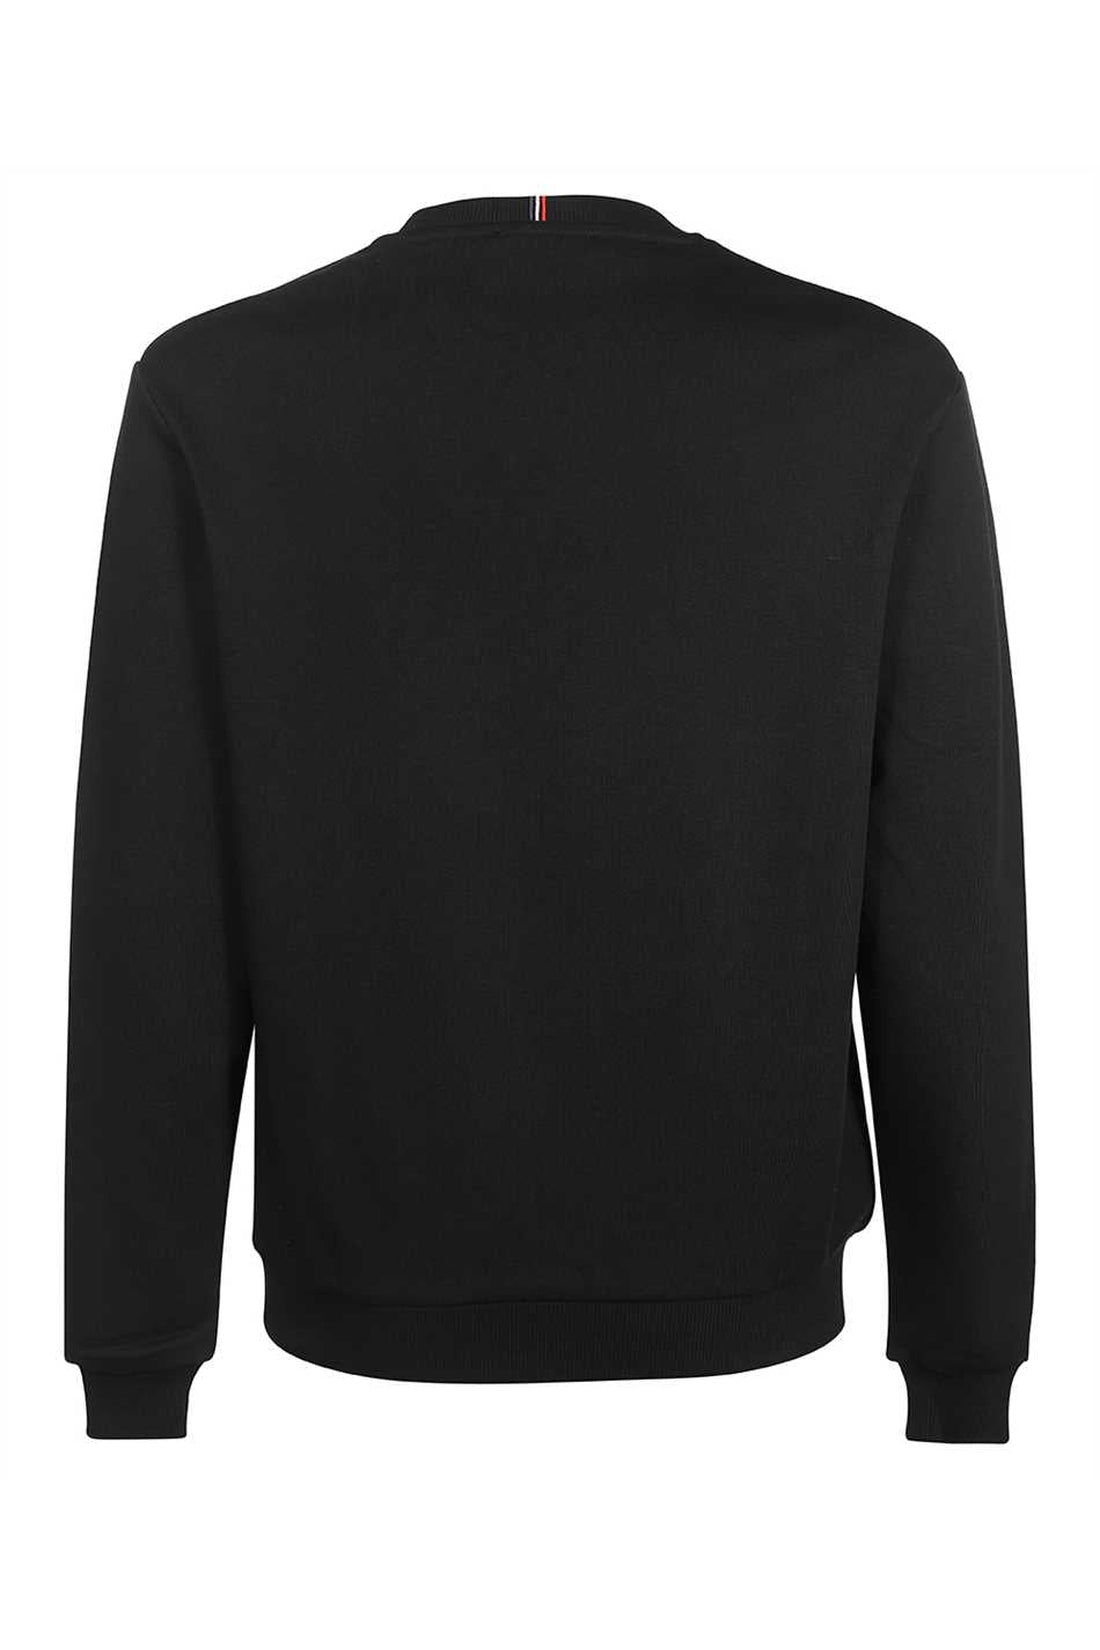 Les Deux-OUTLET-SALE-Blake logo detail cotton sweatshirt-ARCHIVIST